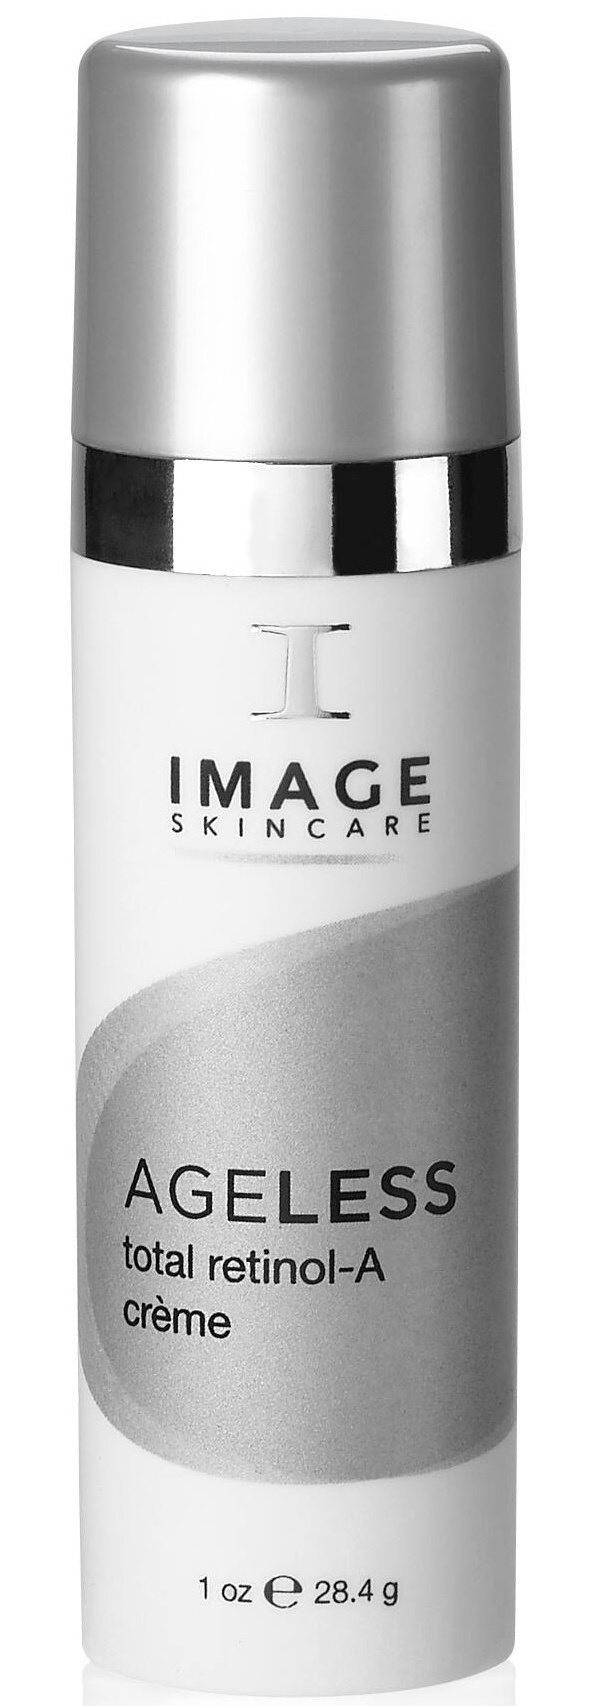 Image Skincare Ageless Total Retinol-A Crème